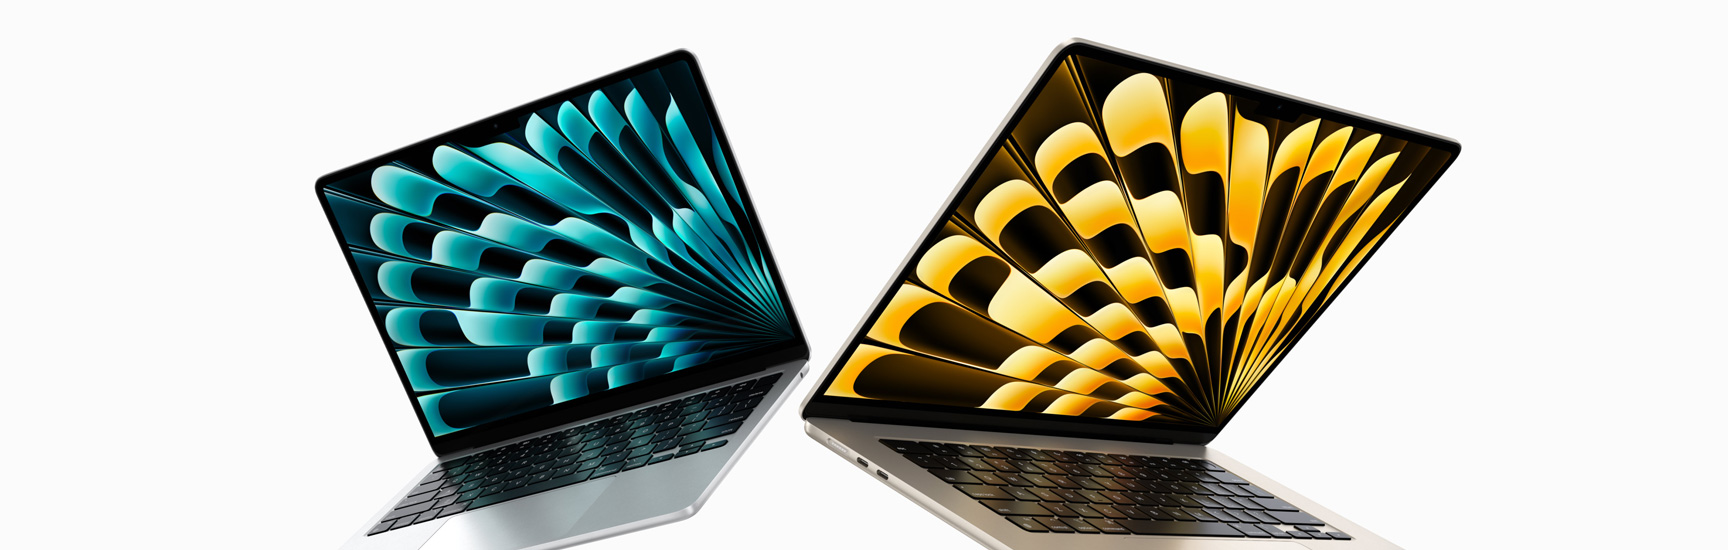 Vista frontal de los modelos de los MacBook Air de 13 y 15 pulgadas color plata y blanco estelar que están levemente abiertos y que destacan los distintos tamaños de las pantallas.